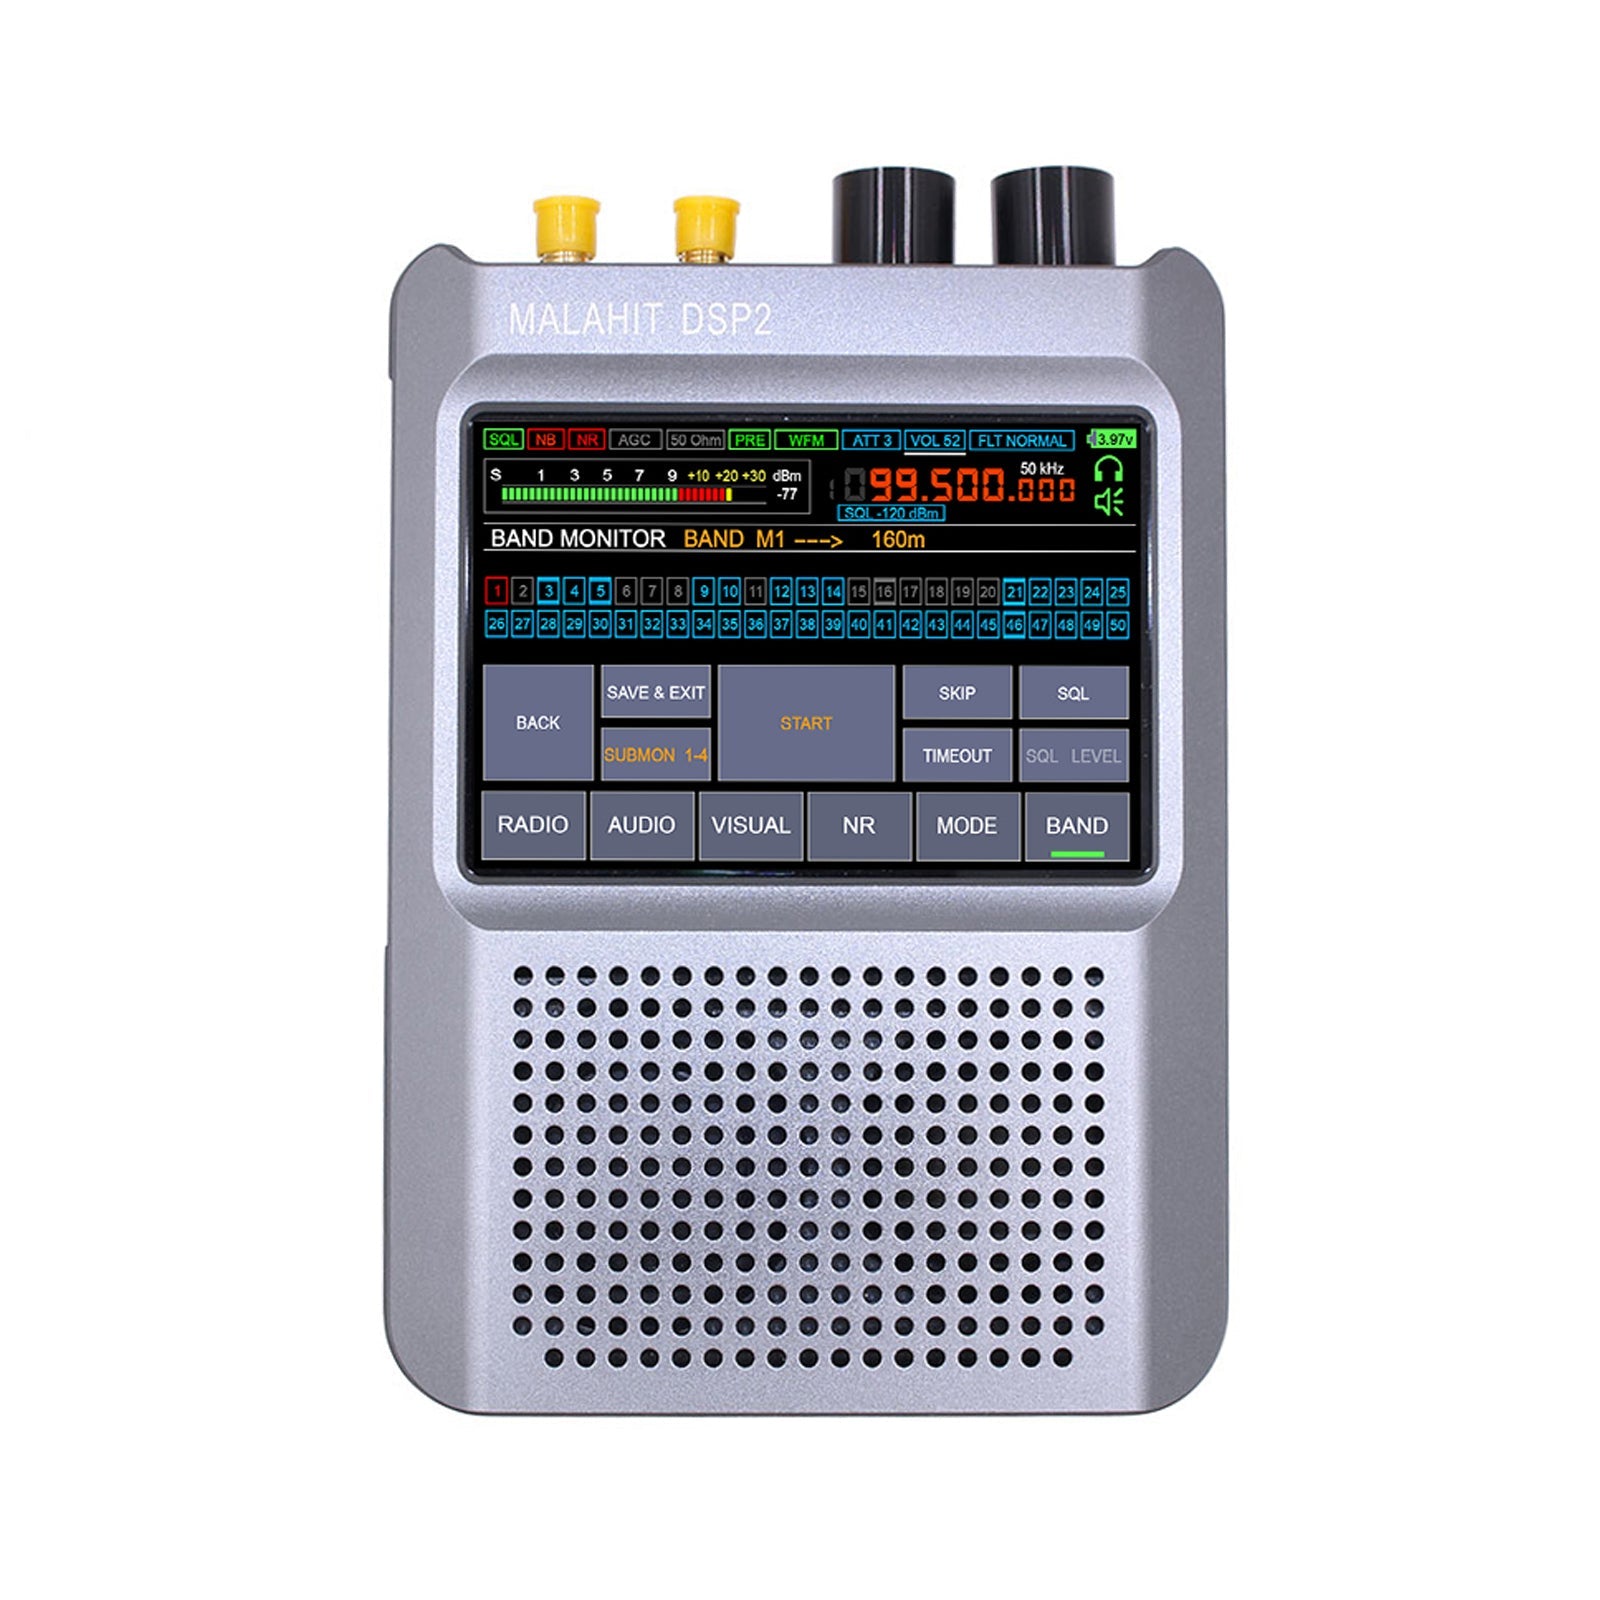 Firmware original autorizado 2.30 Radio receptor Malahit-DSP2 de segunda generación